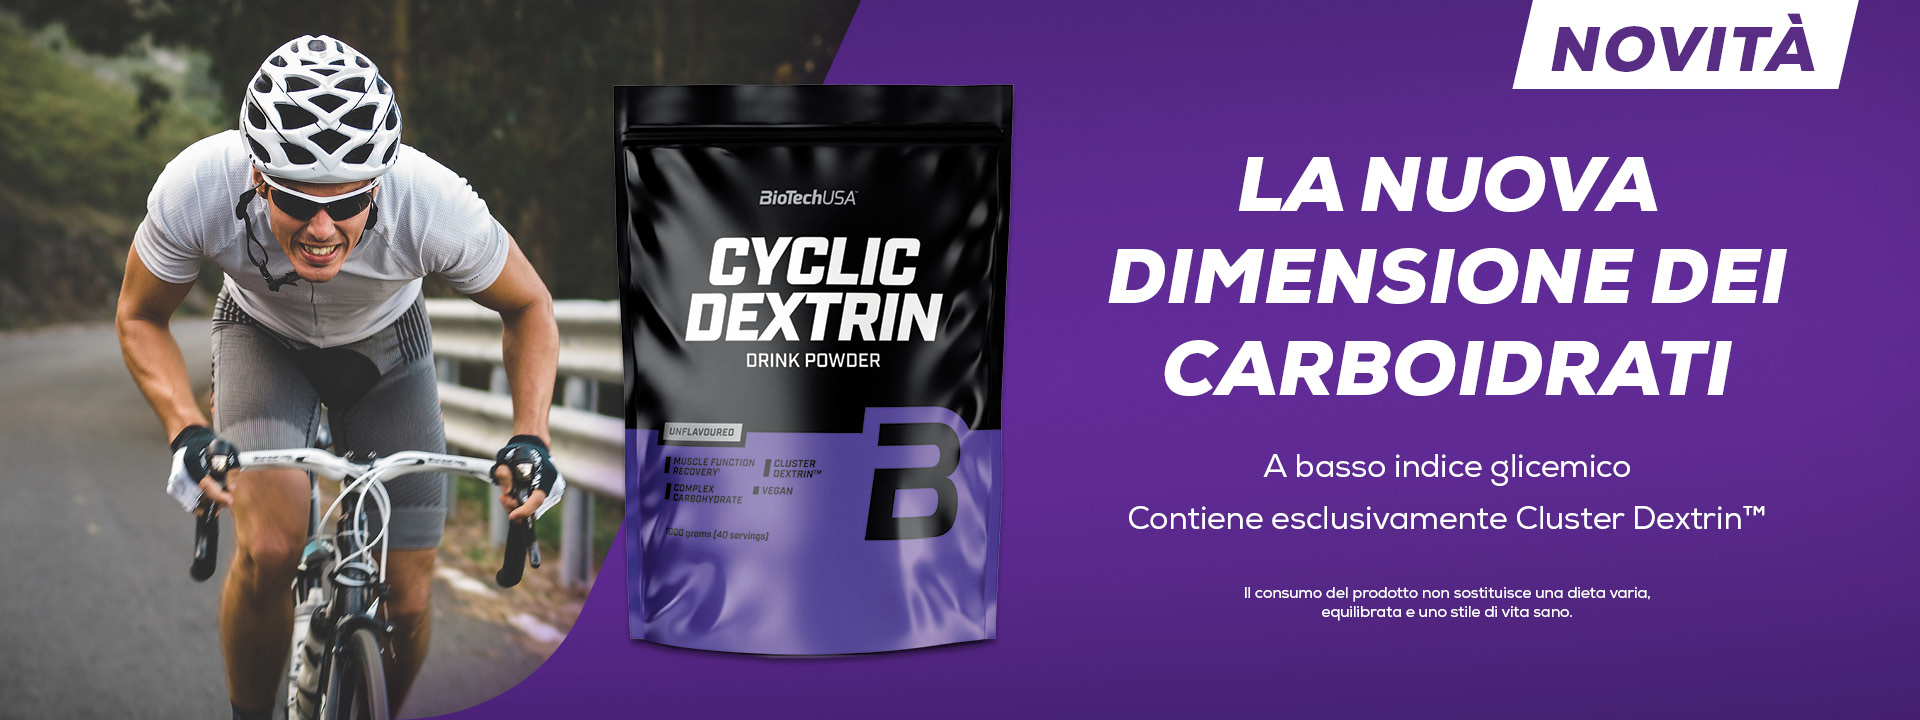 Cyclic dextrin